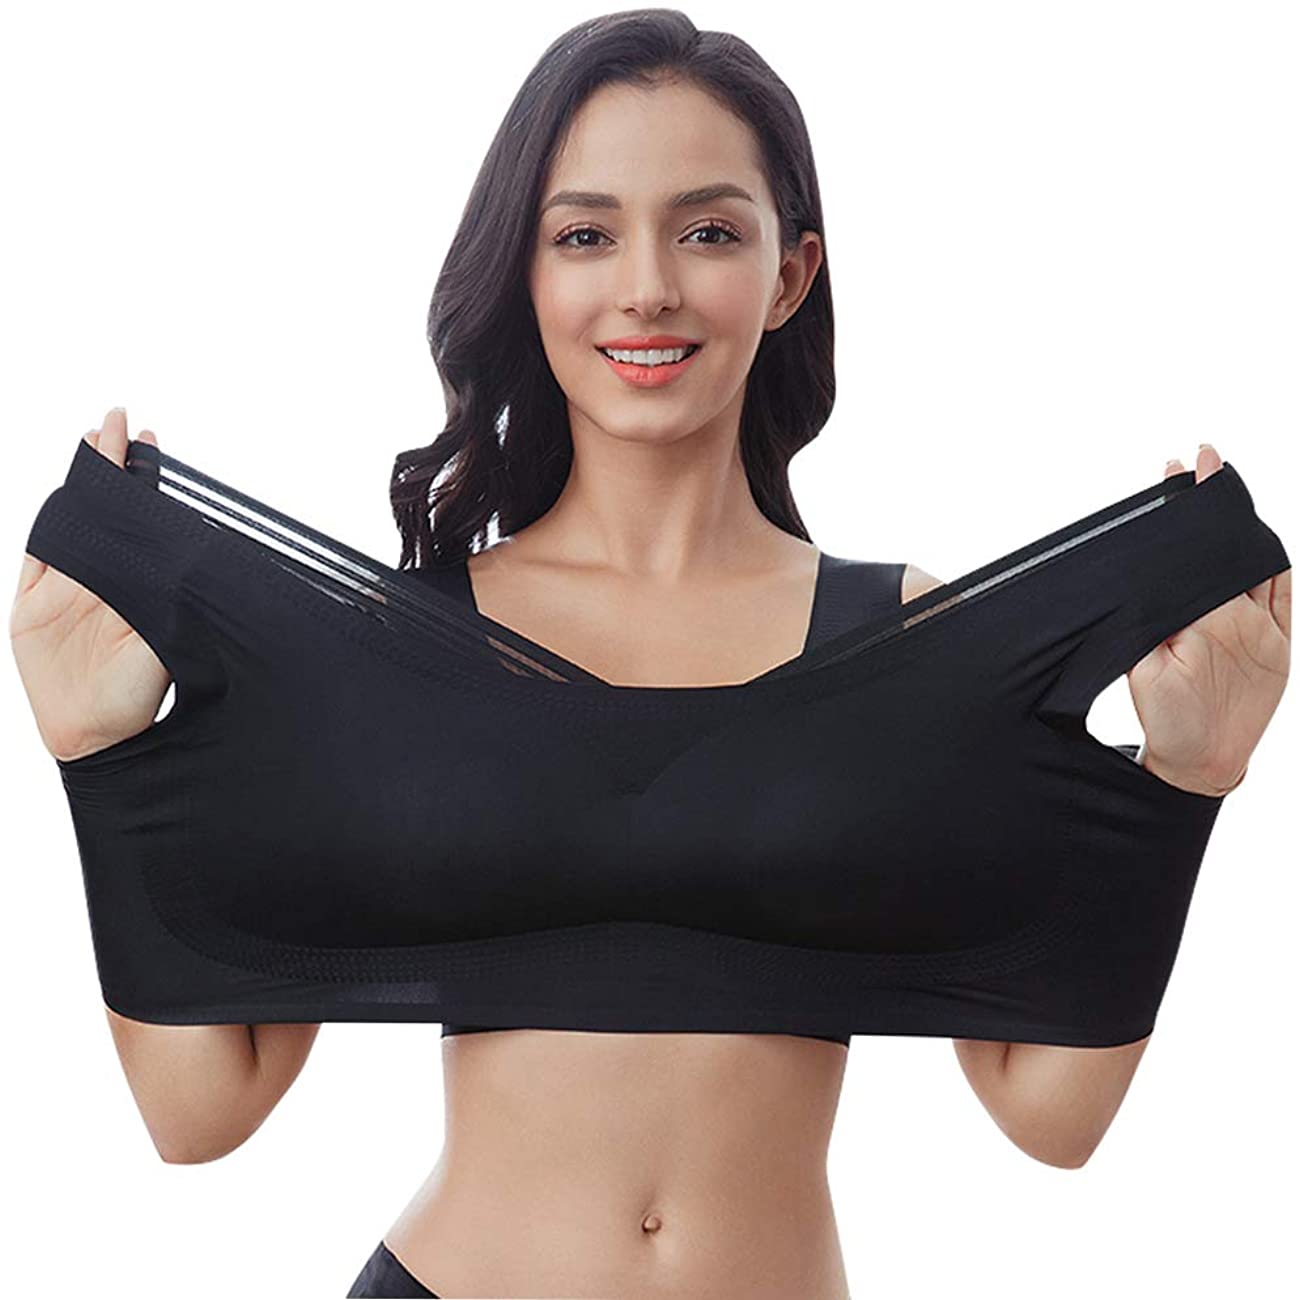 FEOYA Women's Wireless Bras Soft Padded Everyday Bra with